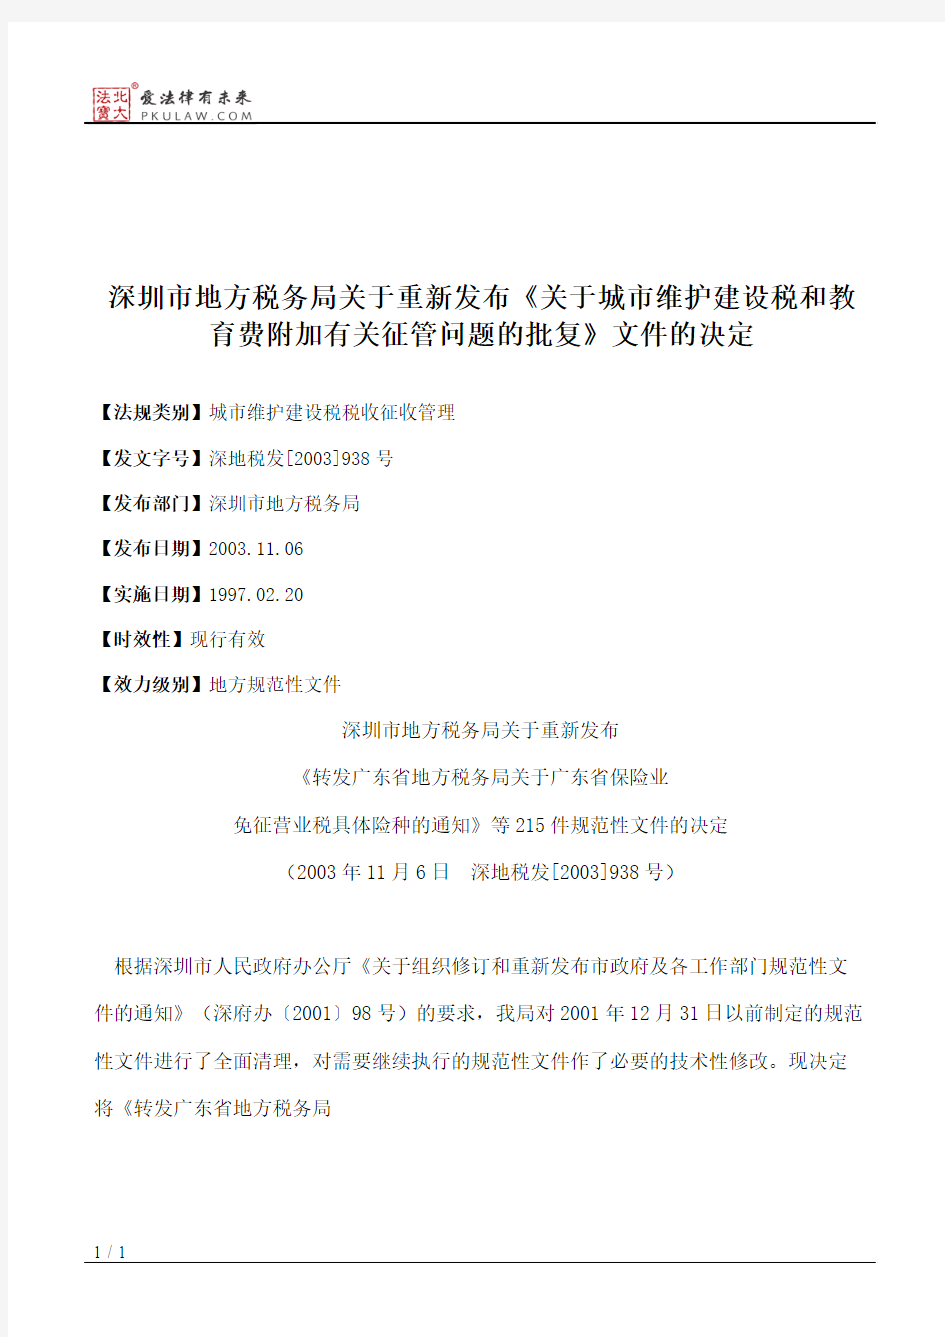 深圳市地方税务局关于重新发布《关于城市维护建设税和教育费附加